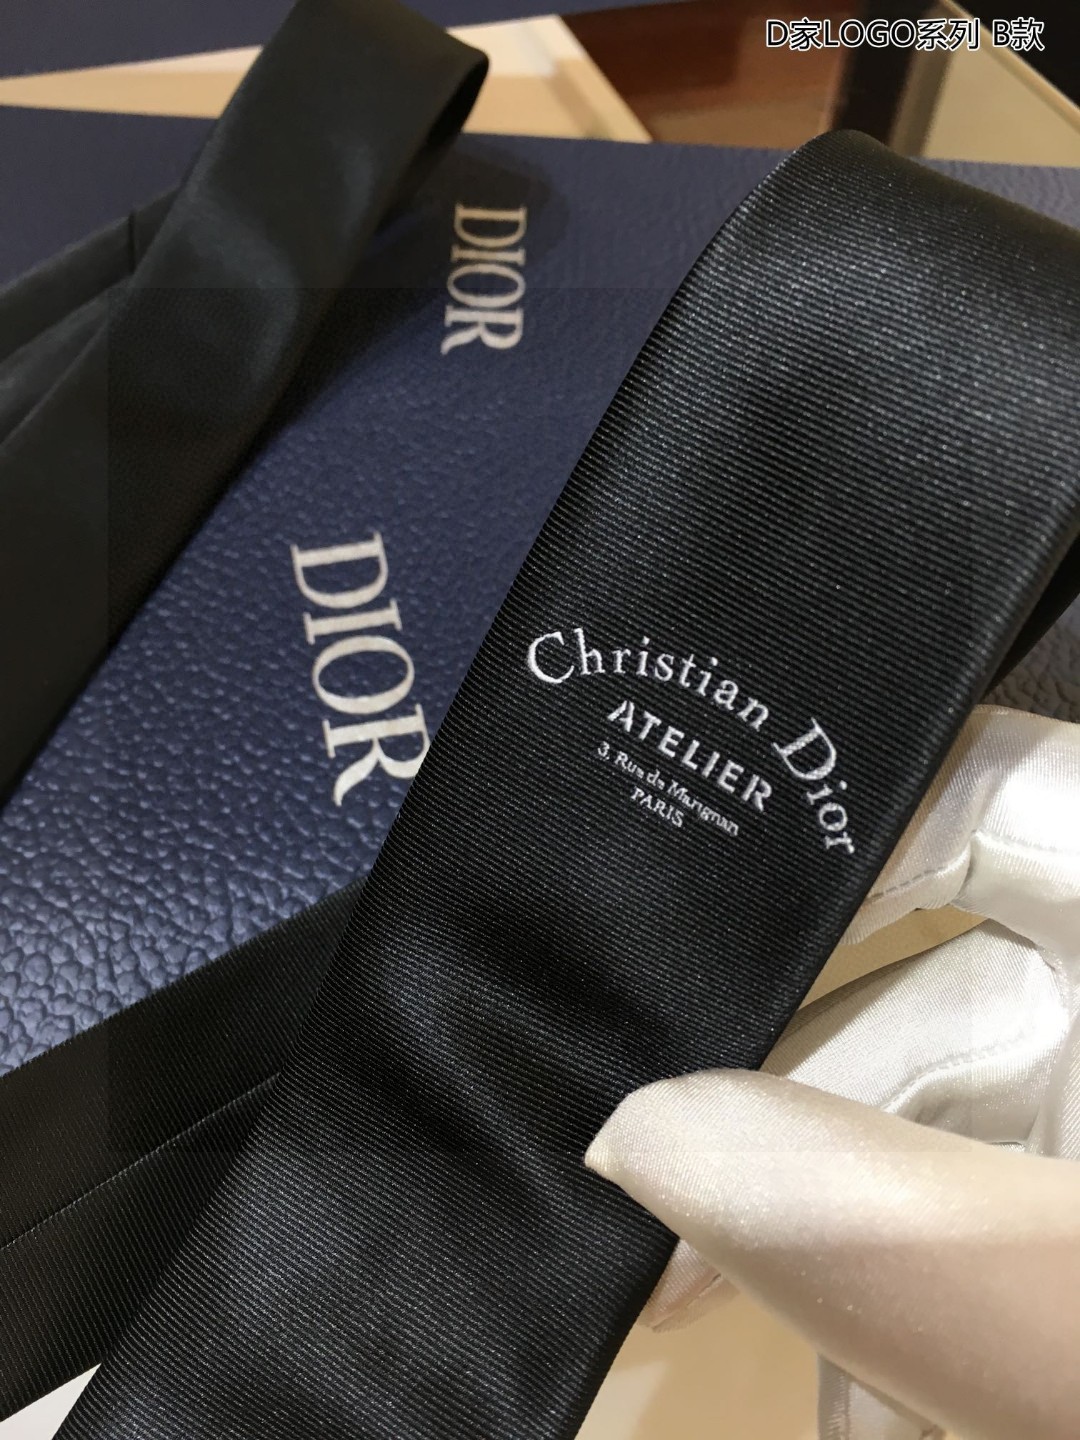 爆款到Do家新款领带配盒子Dior男士D家LOGO系列领带稀有展现精湛手工与时尚优雅的理想选择这款采用D